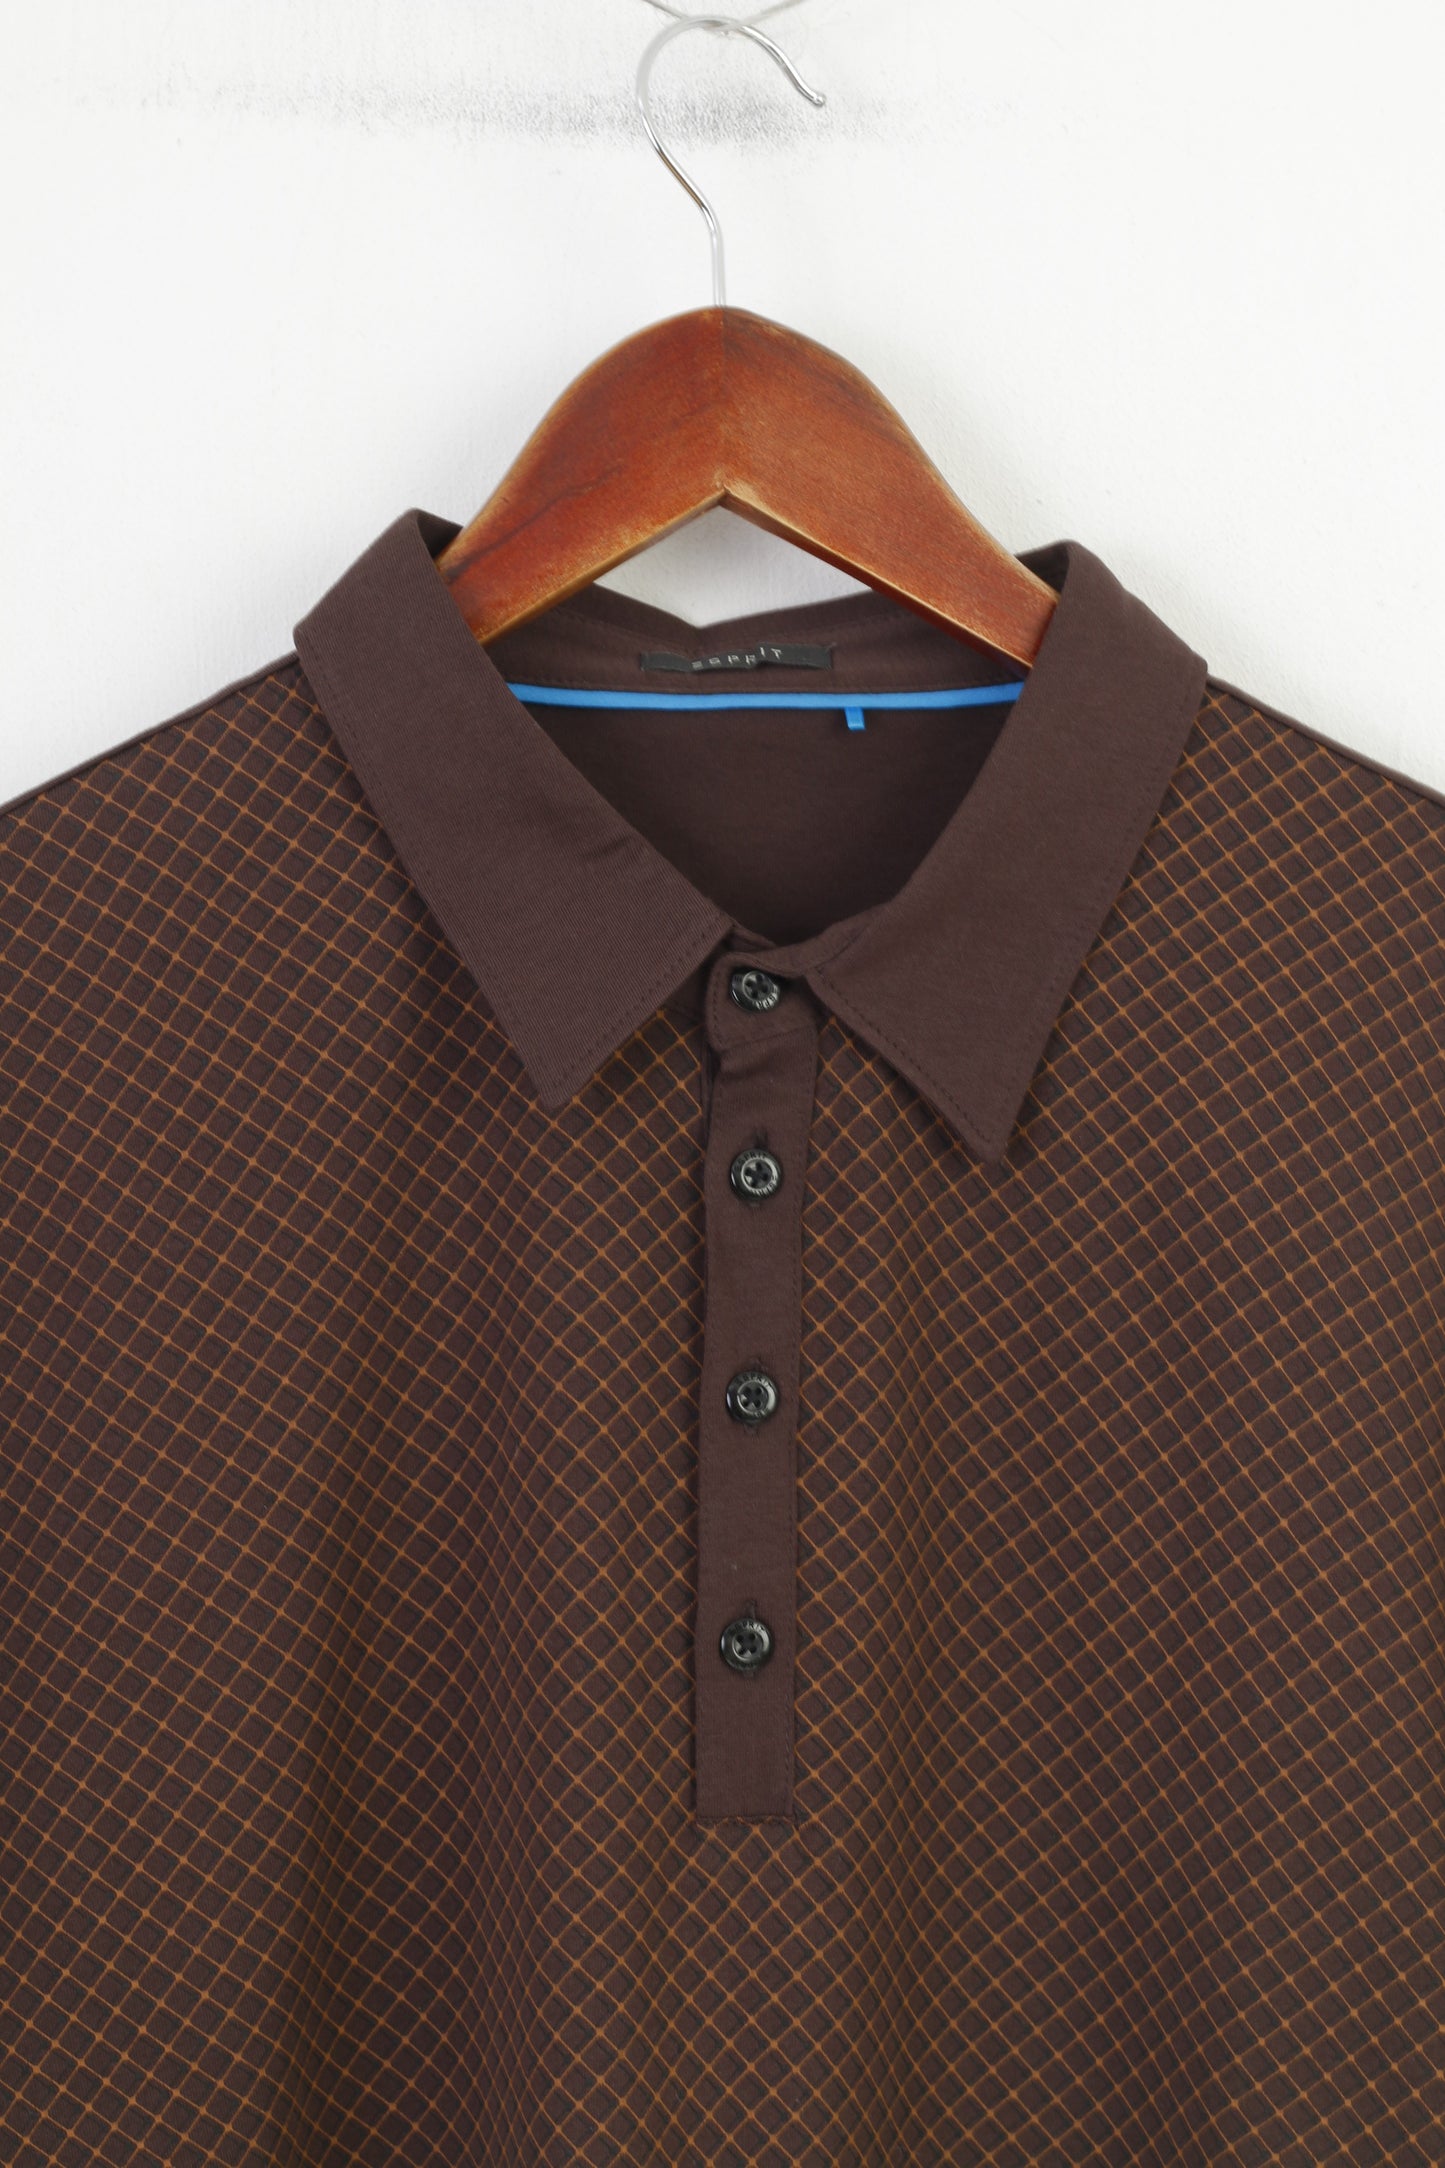 Polo Esprit da uomo XL in cotone a quadretti marrone con bottoni dettagliati, colletto classico, top a maniche corte vintage